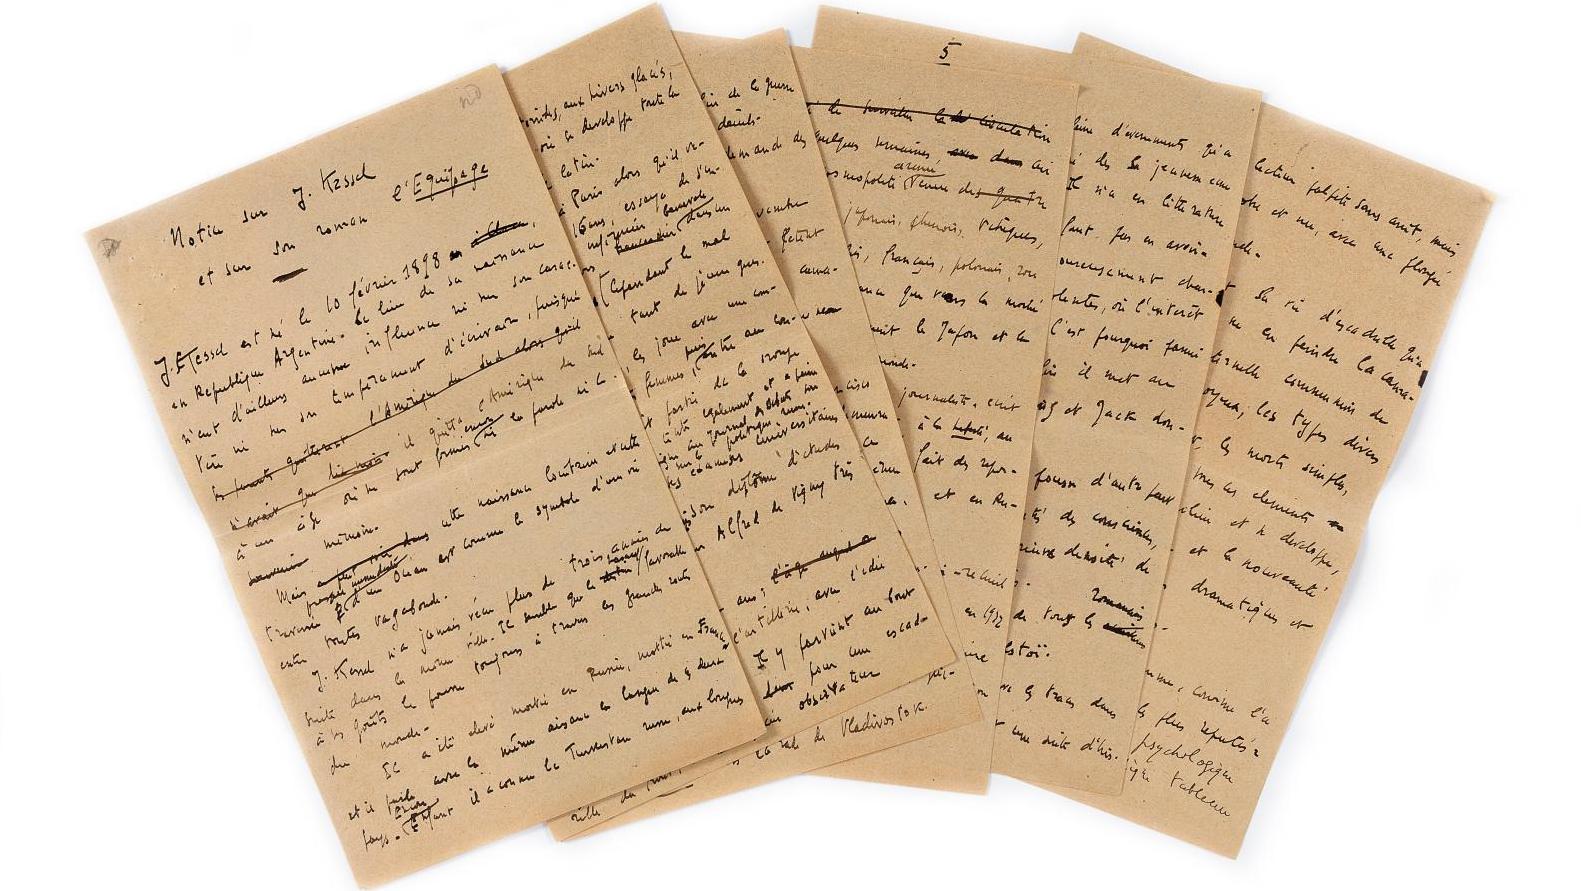 Joseph Kessel (1898-1979), Manuscrit autographe, 1924 ; 6 pages petit in-4°. Notice... Bibliophilie : l’équipage de Joseph Kessel et ses cavaliers 